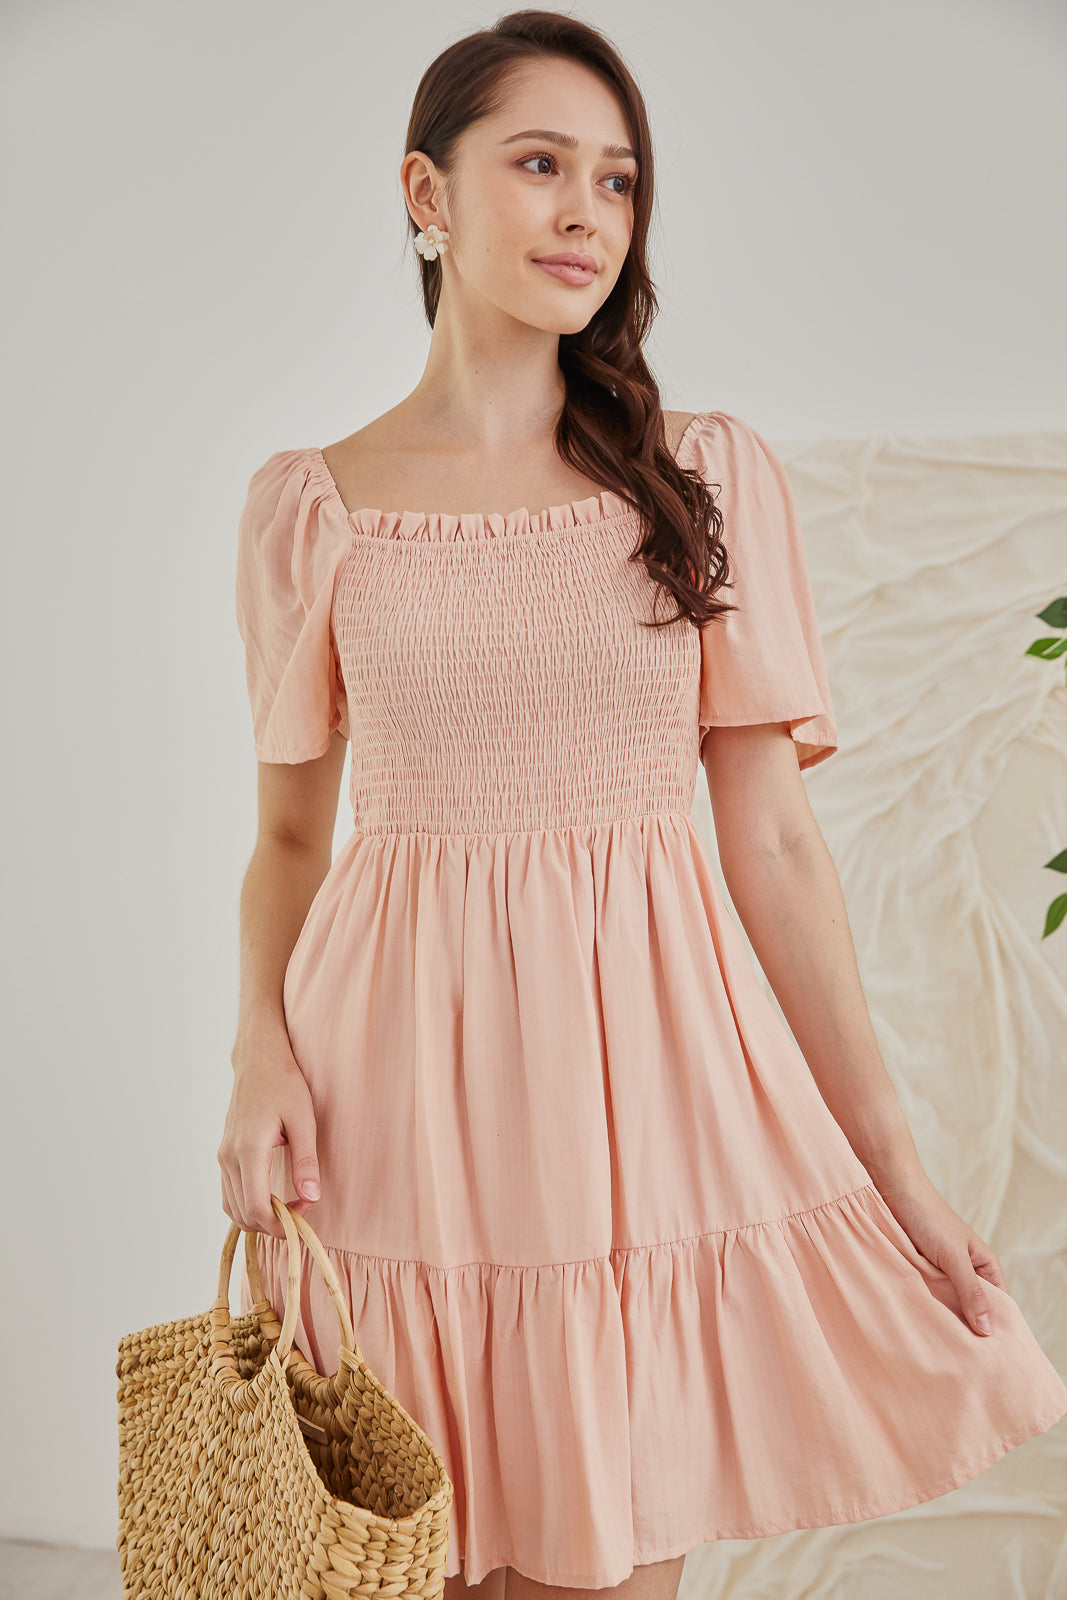 Mabel Mini Smocked Dress in Peach